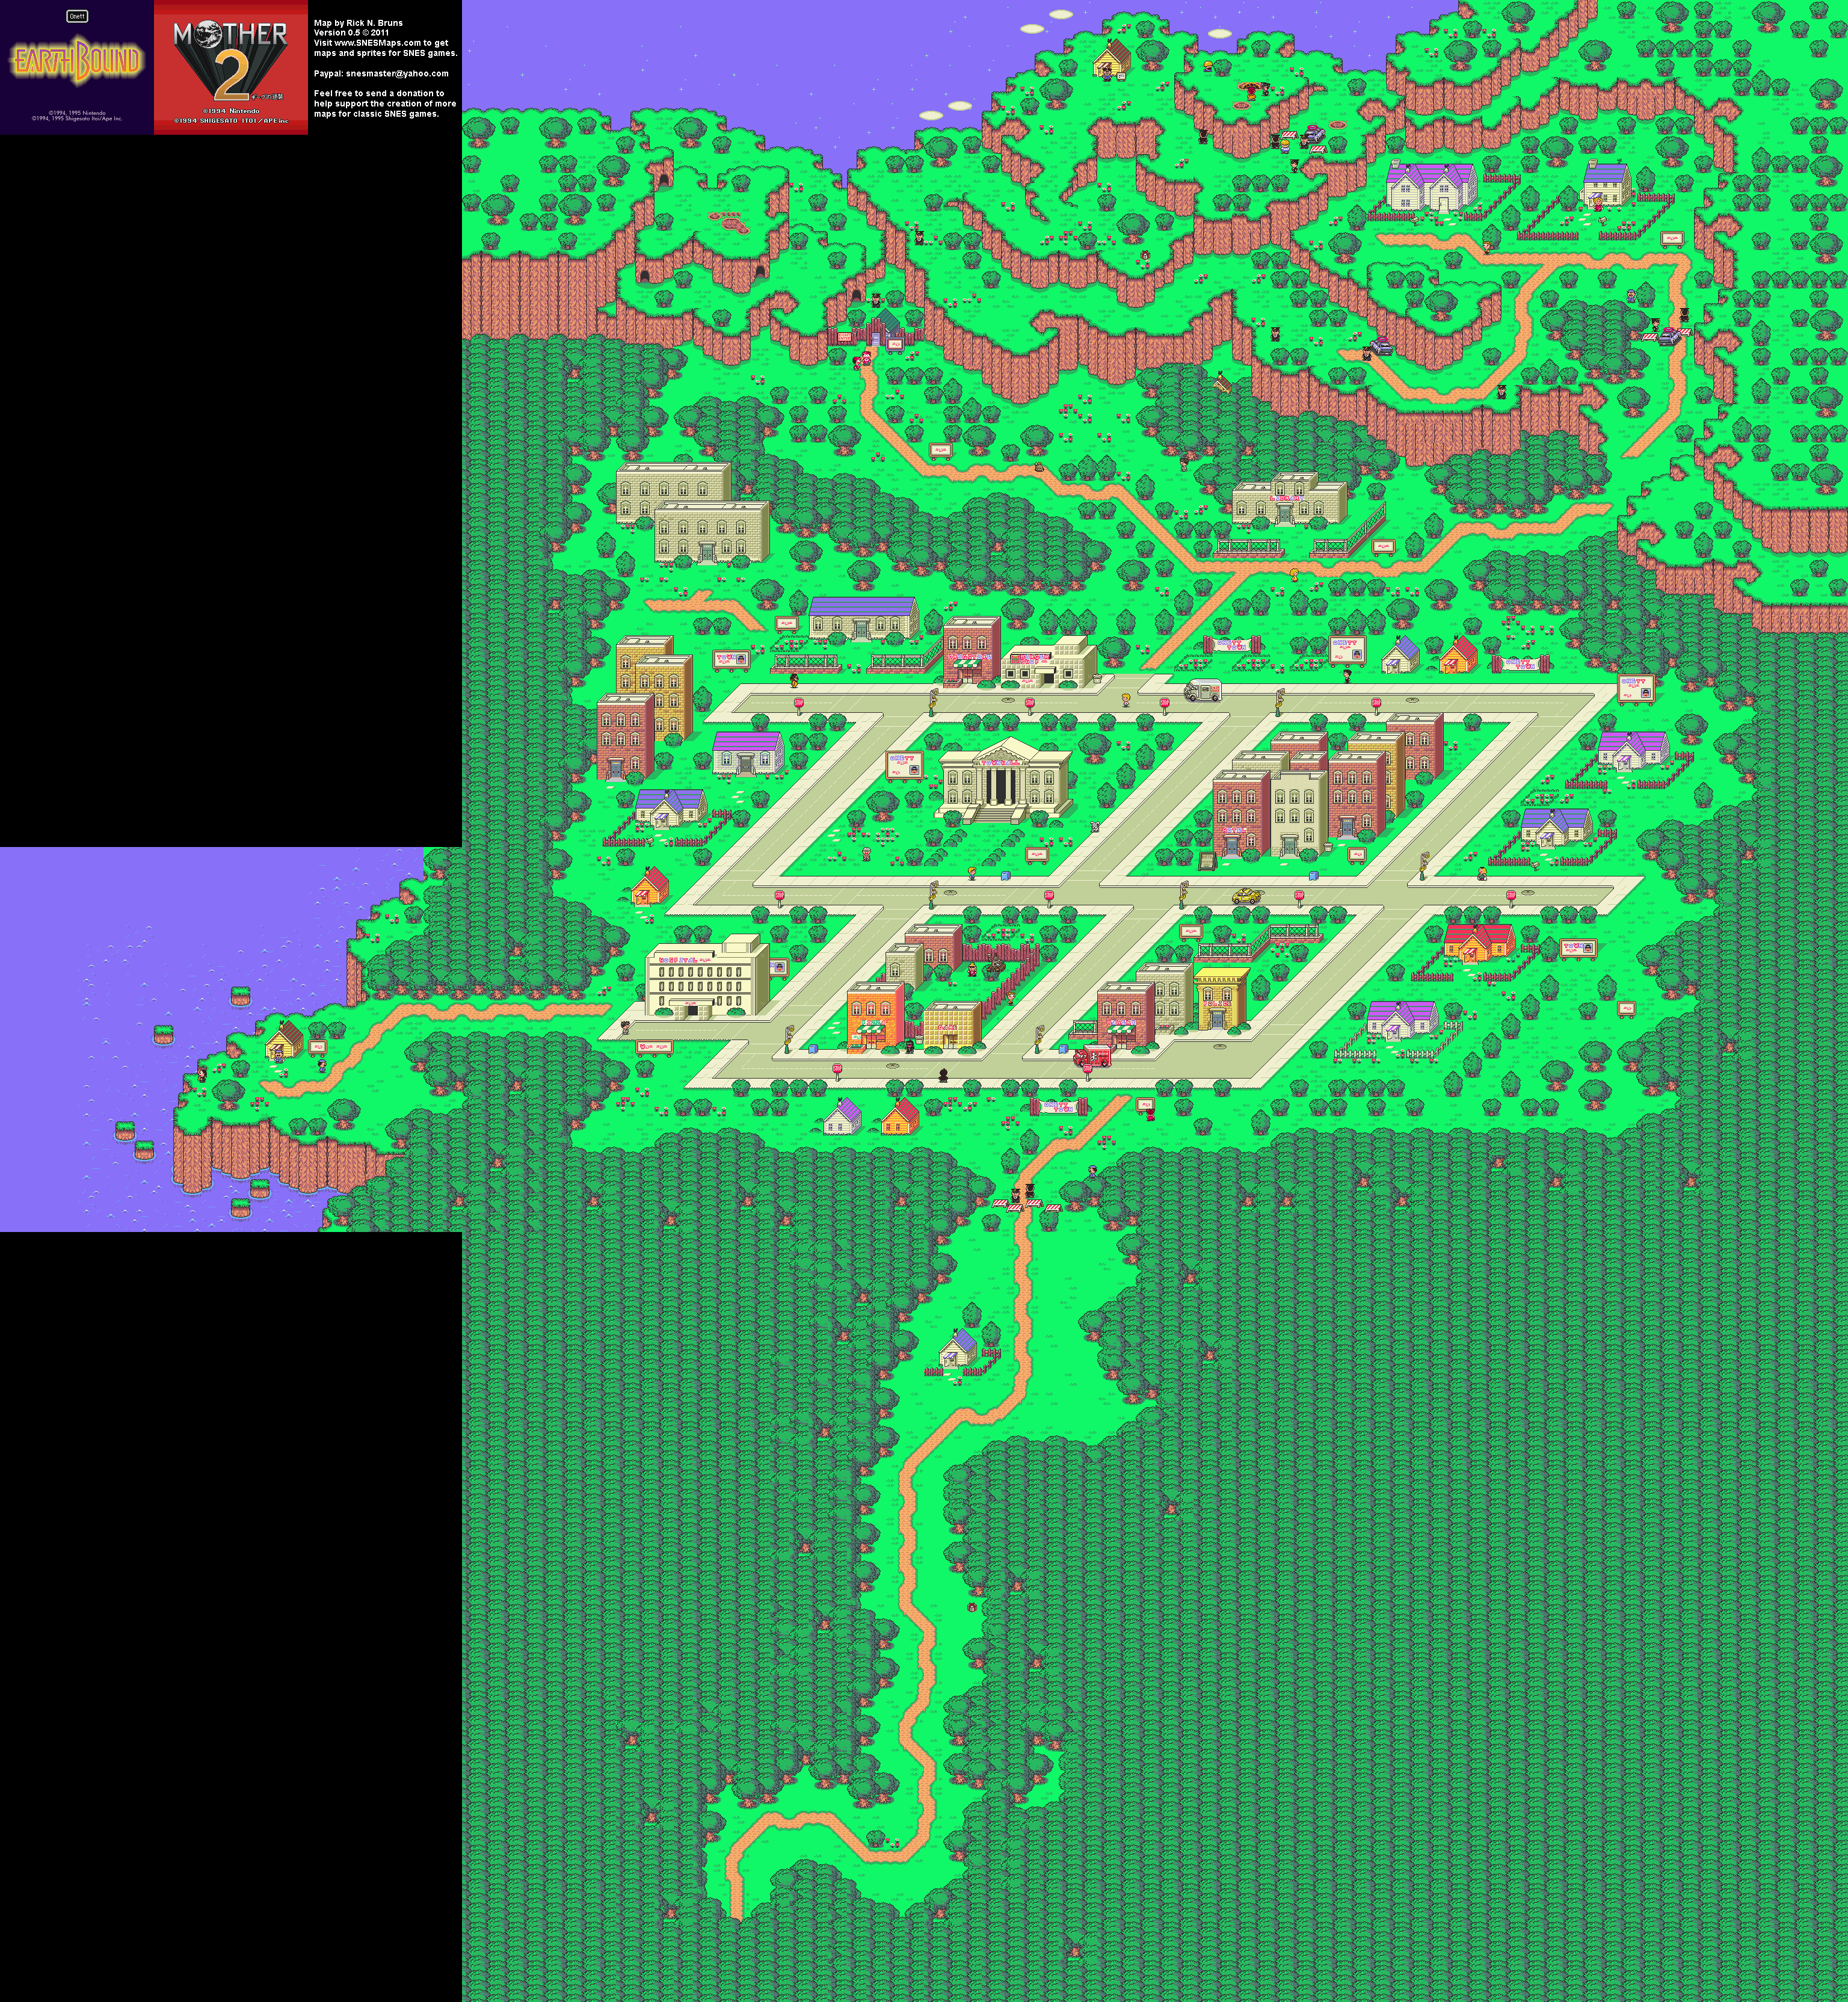 EarthBound (Mother 2) - Onett Super Nintendo SNES Map